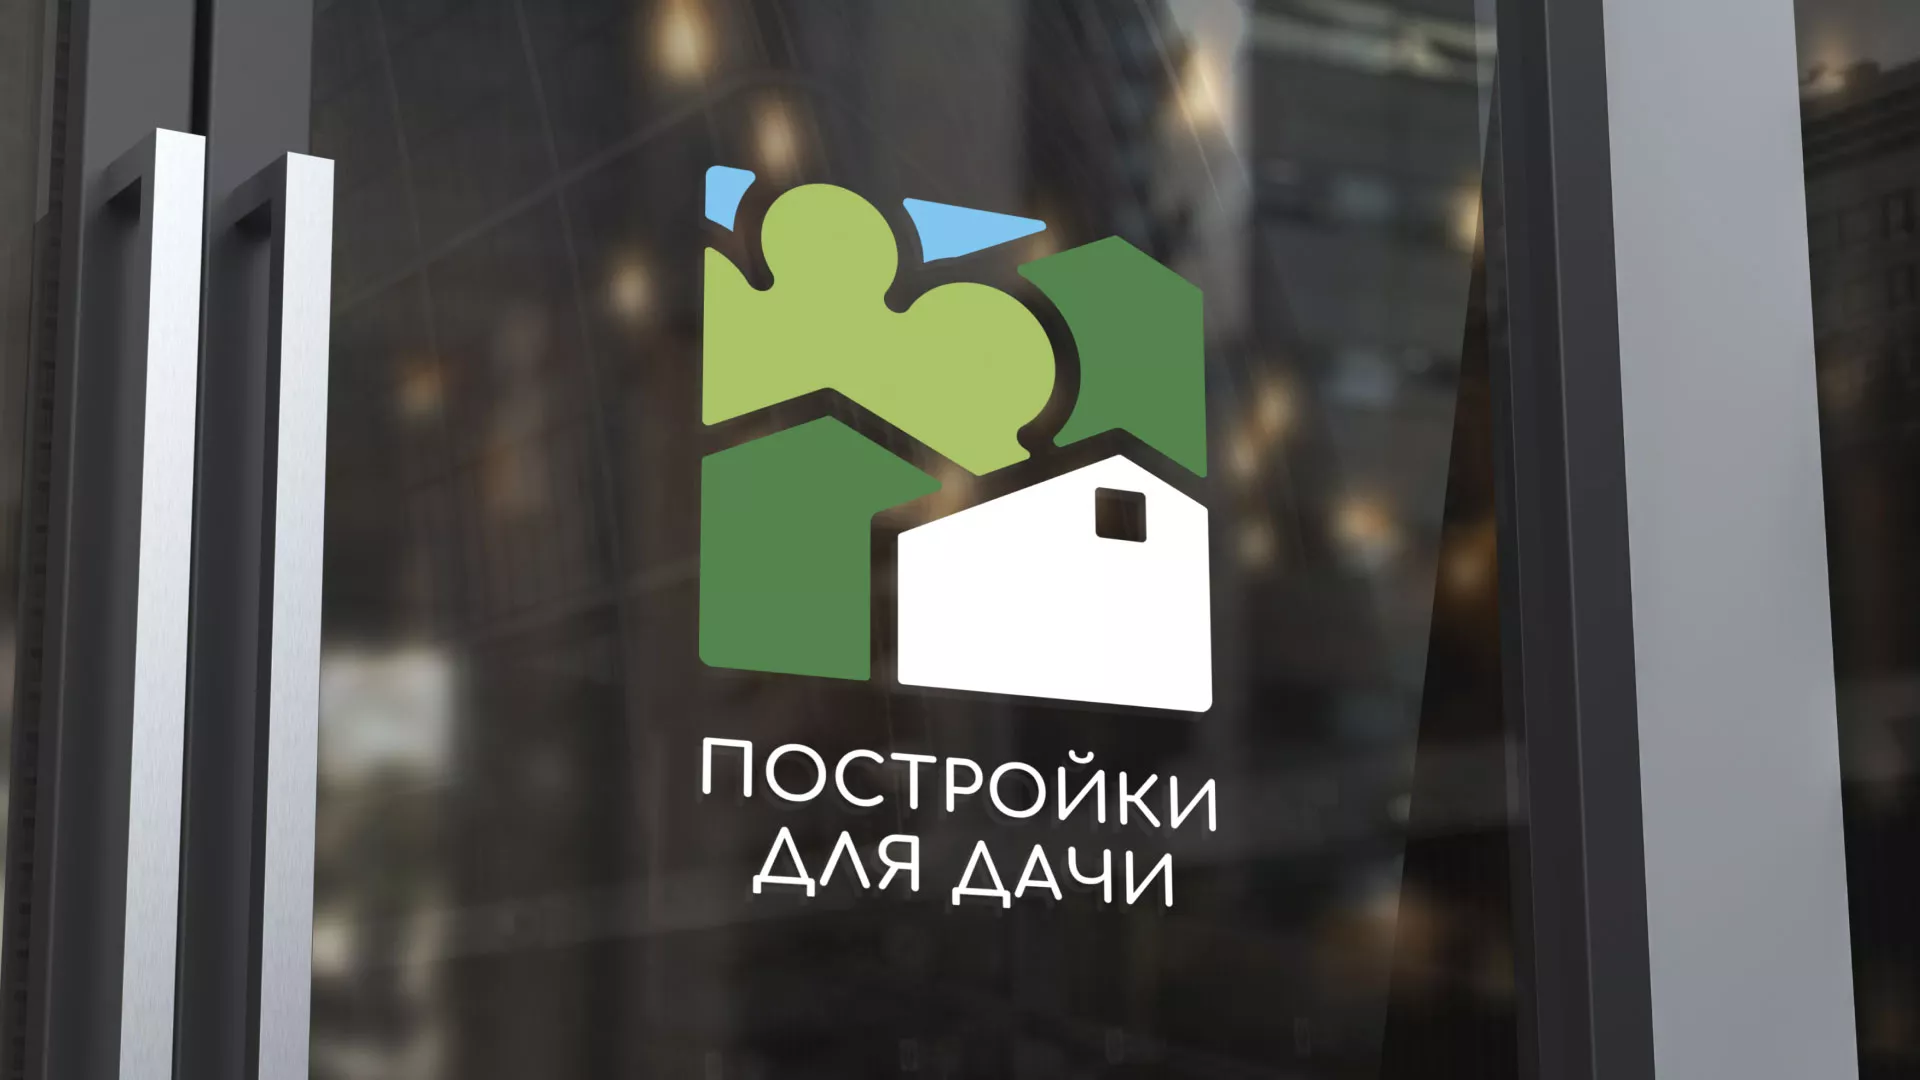 Разработка логотипа в Гдове для компании «Постройки для дачи»